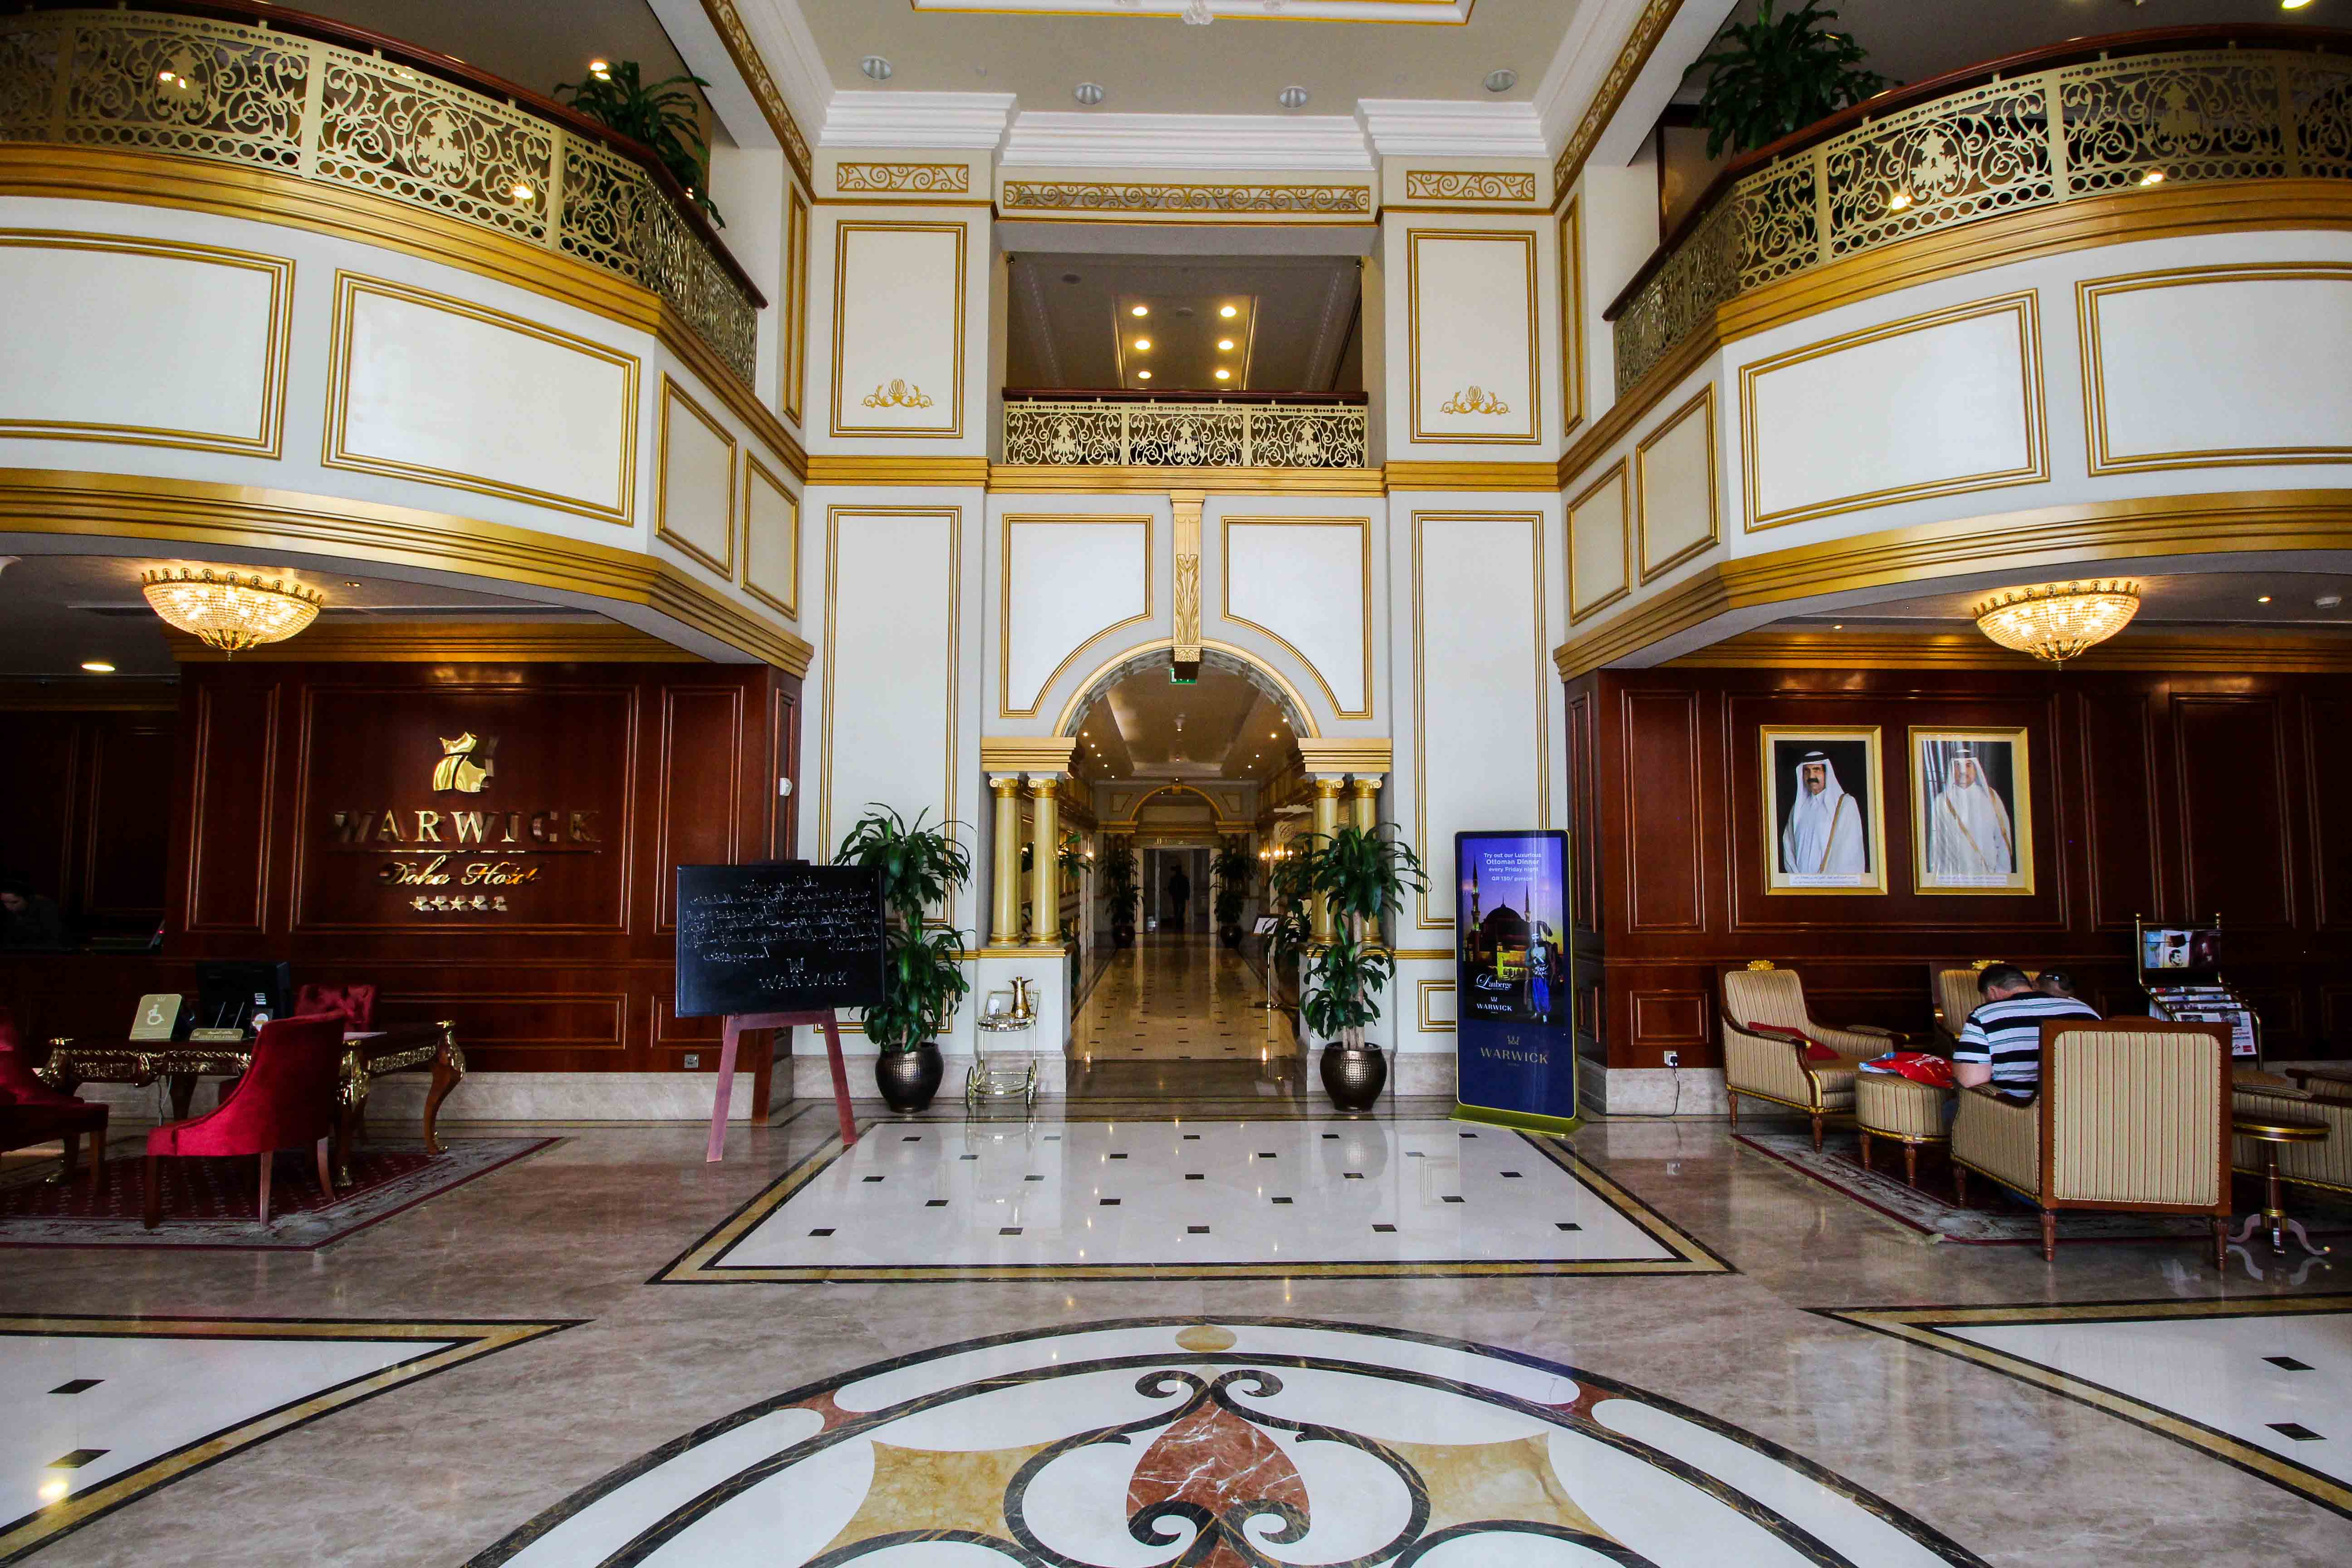 Warwick Hotel Doha Eingangshalle Gold Luxushotel 5 Sterne Hotel Katar Qatar Reiseblog 